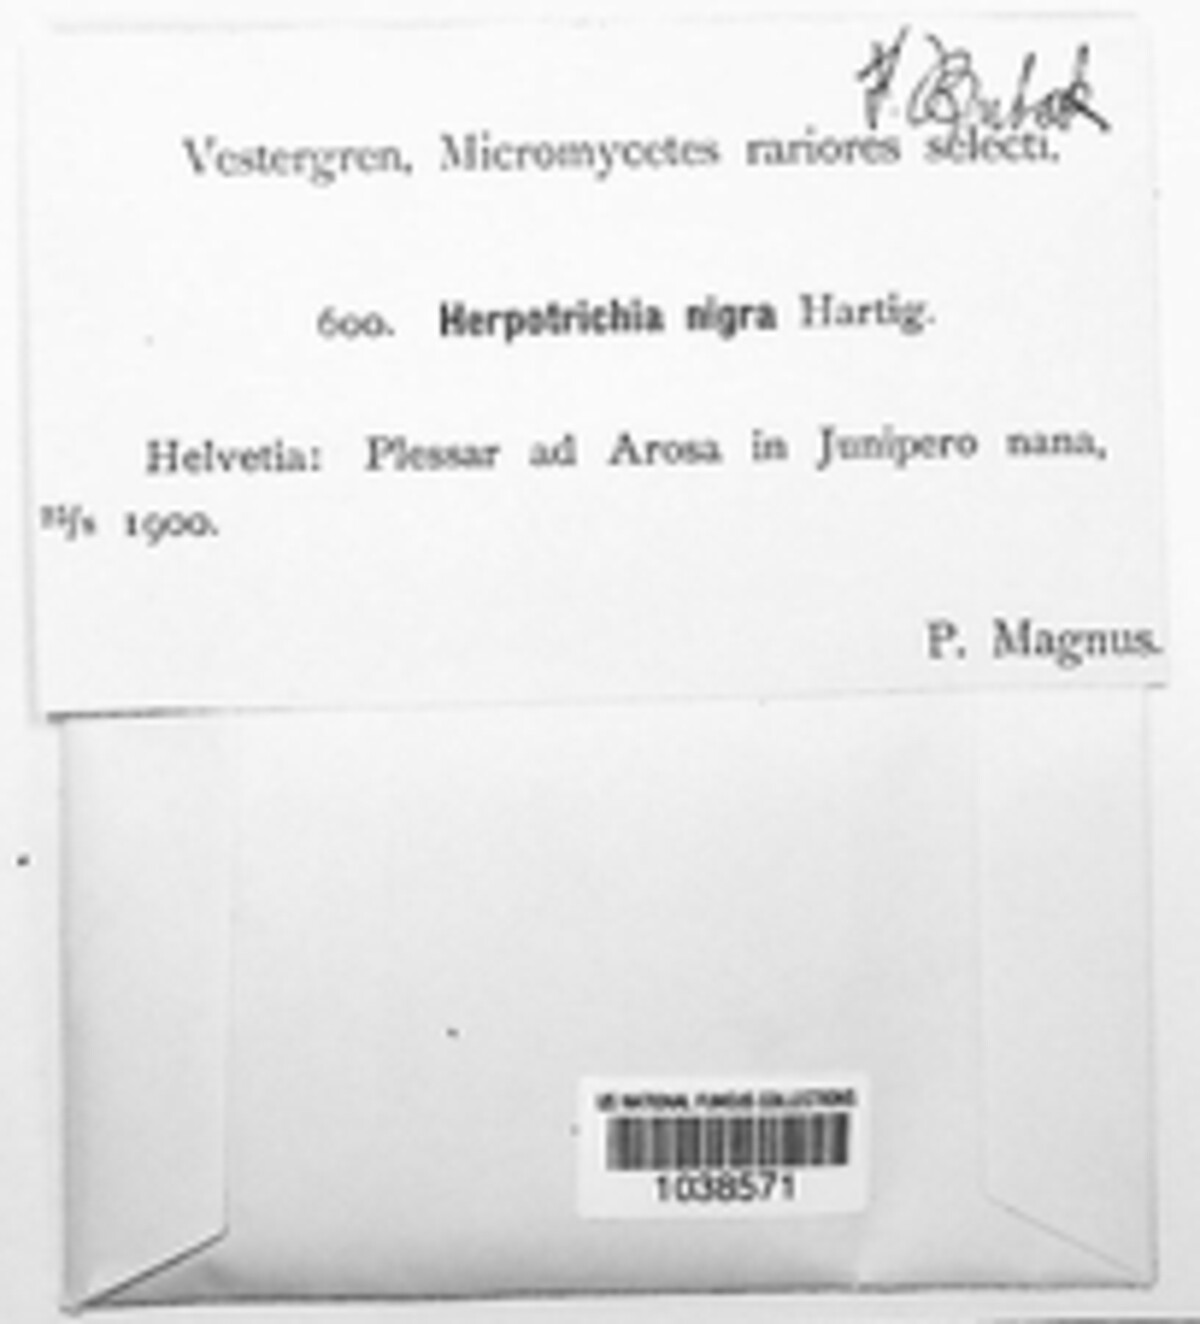 Herpotrichia nigra image